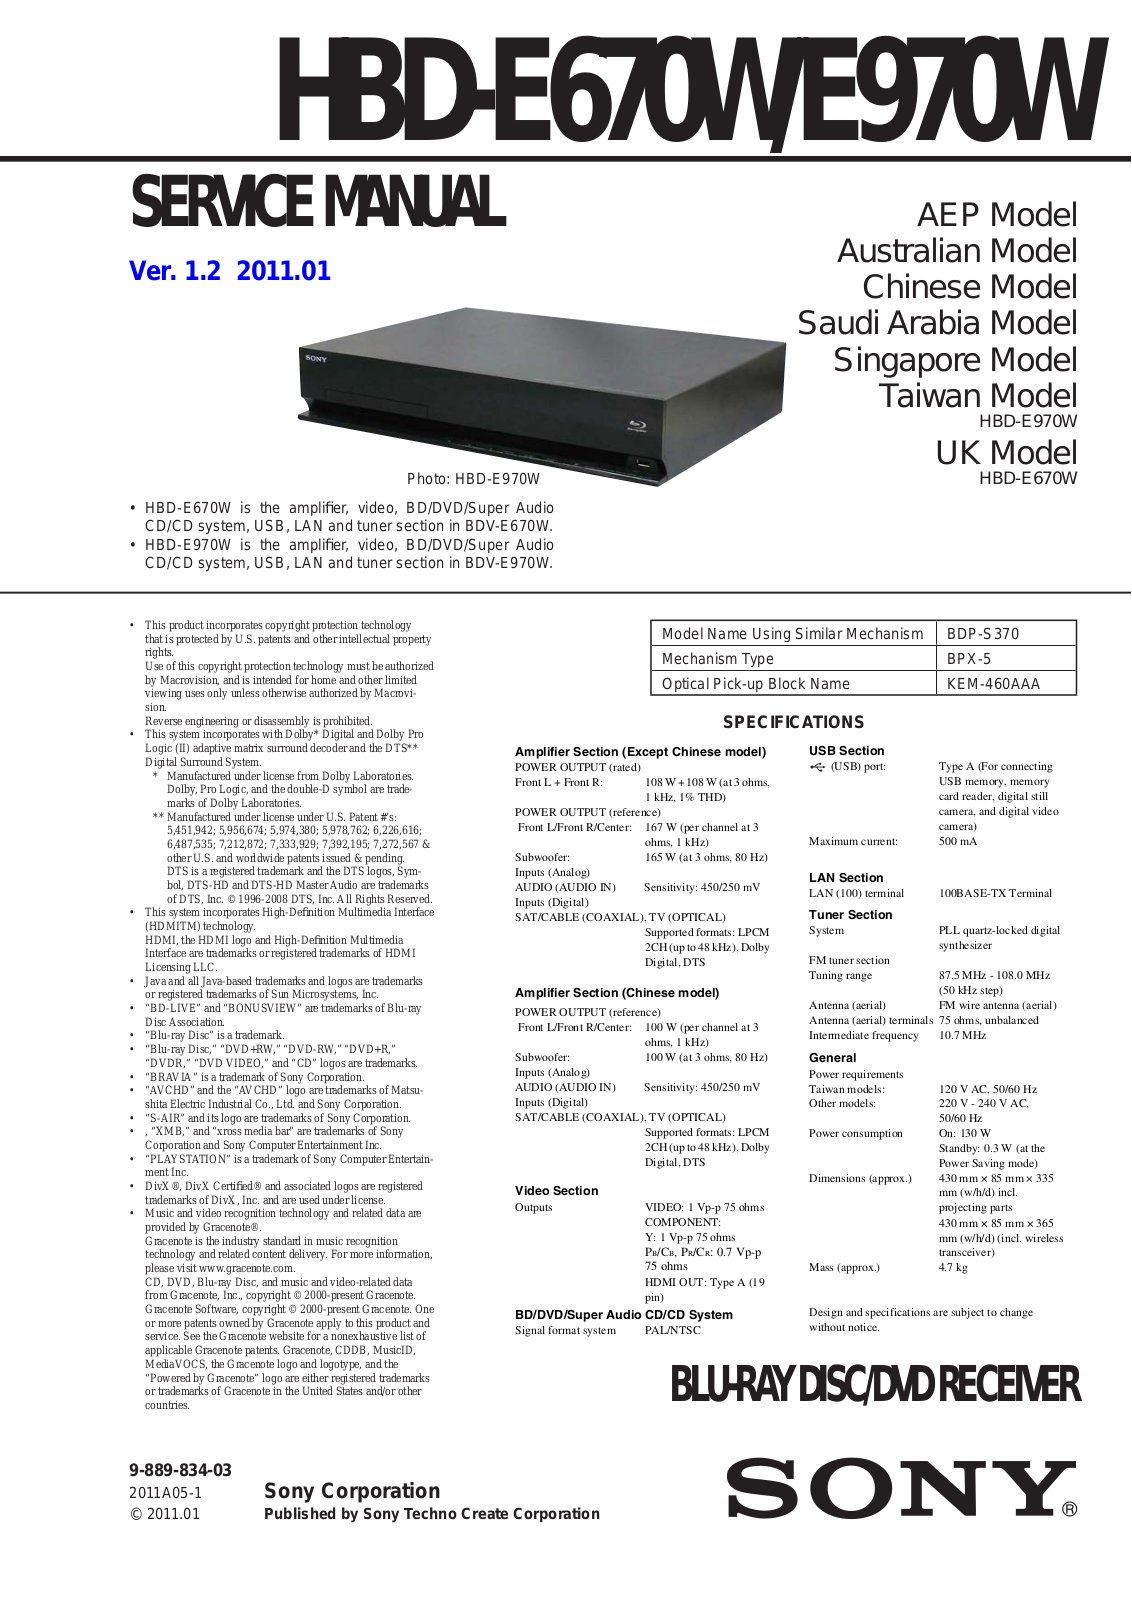 Sony HBD-E670W, HBD-E970W Service Manual